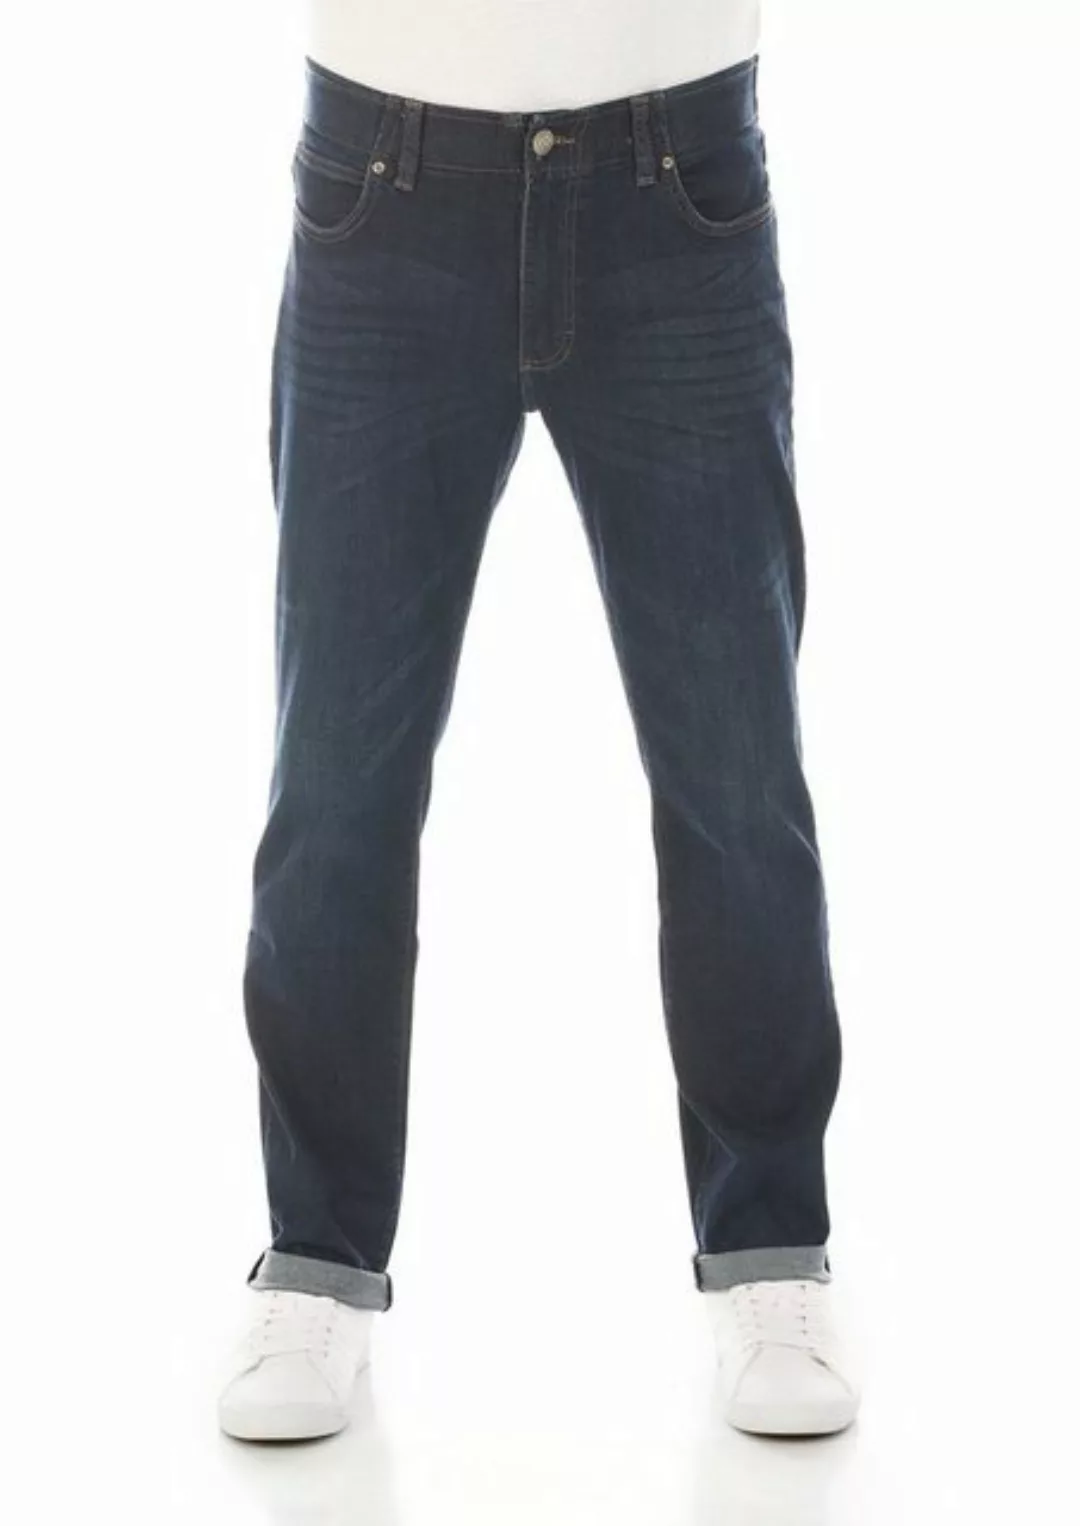 Lee Herren Jeans Extreme Motion - Straight Fit - Blau - Trip günstig online kaufen